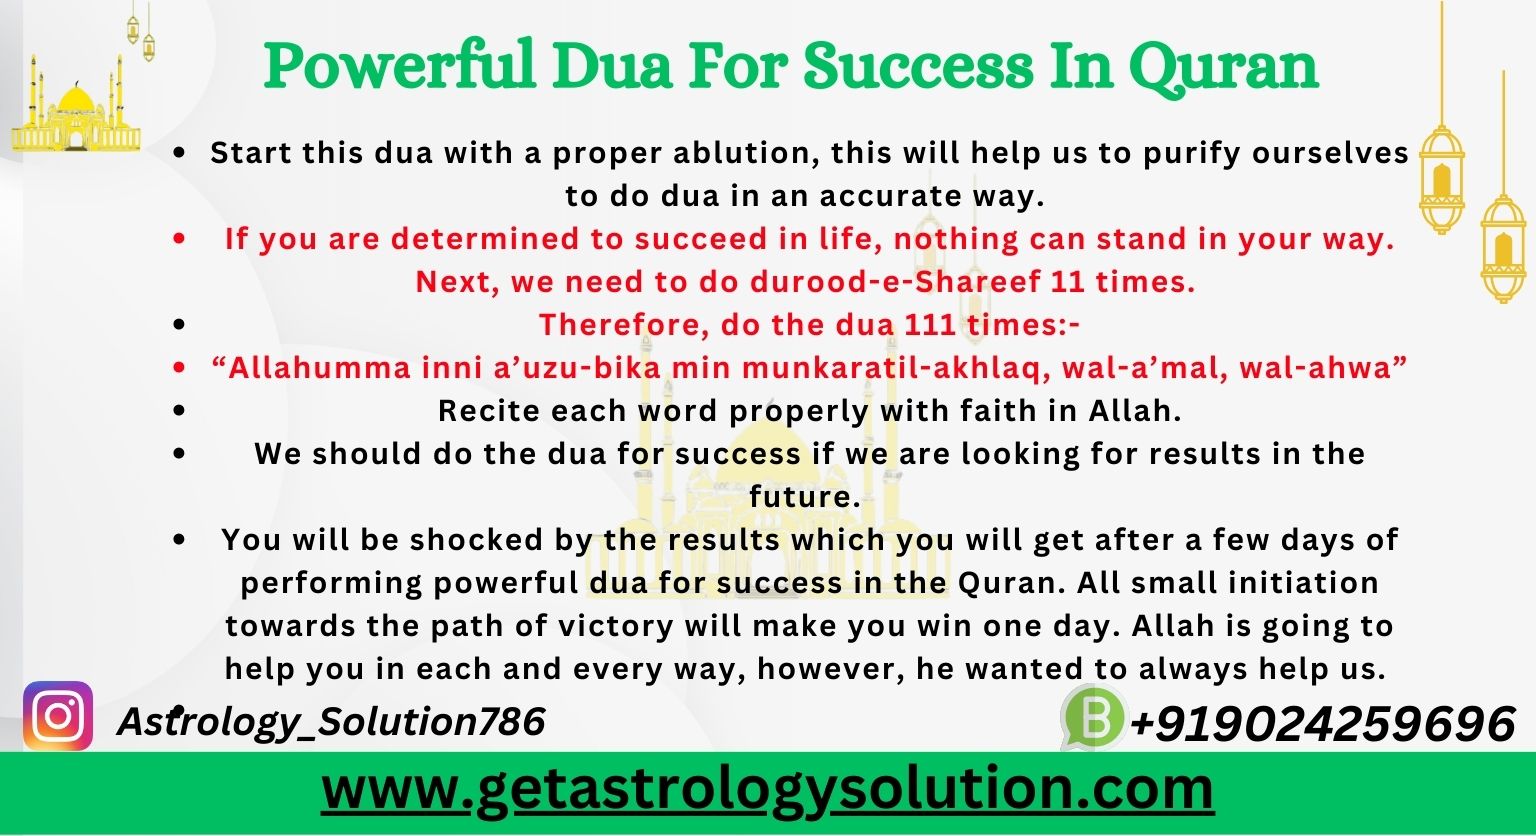 Powerful Dua For Success In Quran